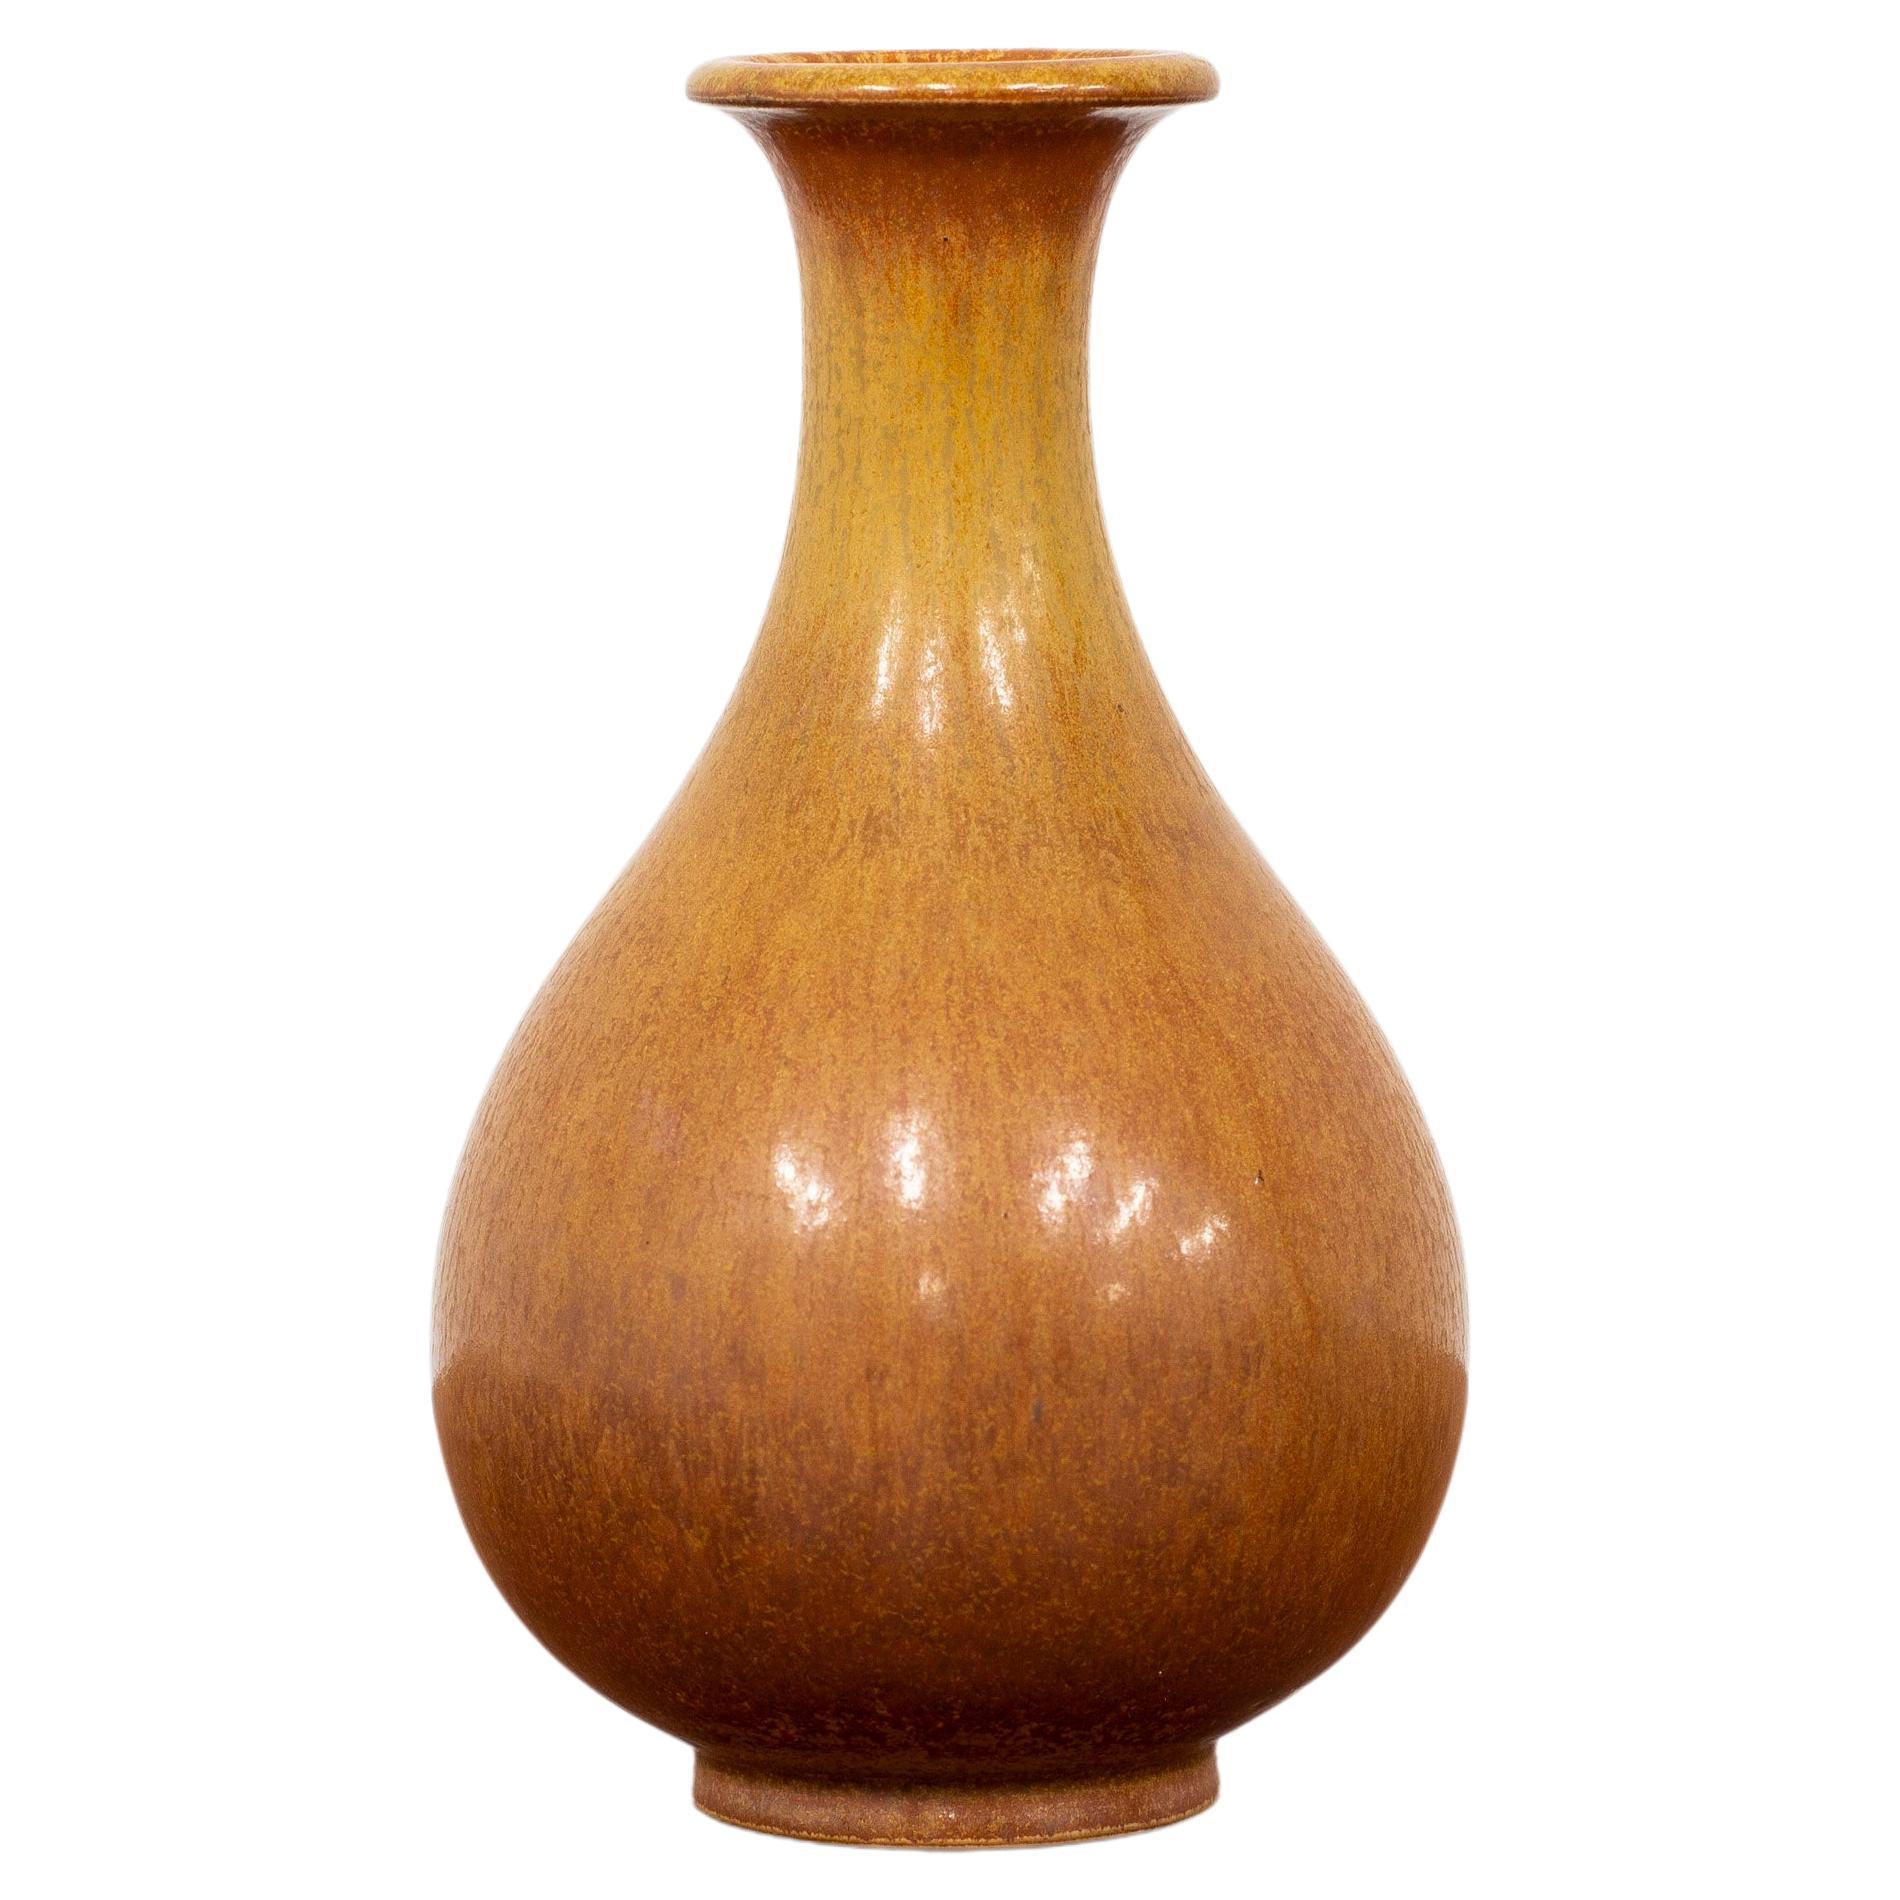 Brown Stoneware Vase Designed by Gunnar Nylund, 1950s